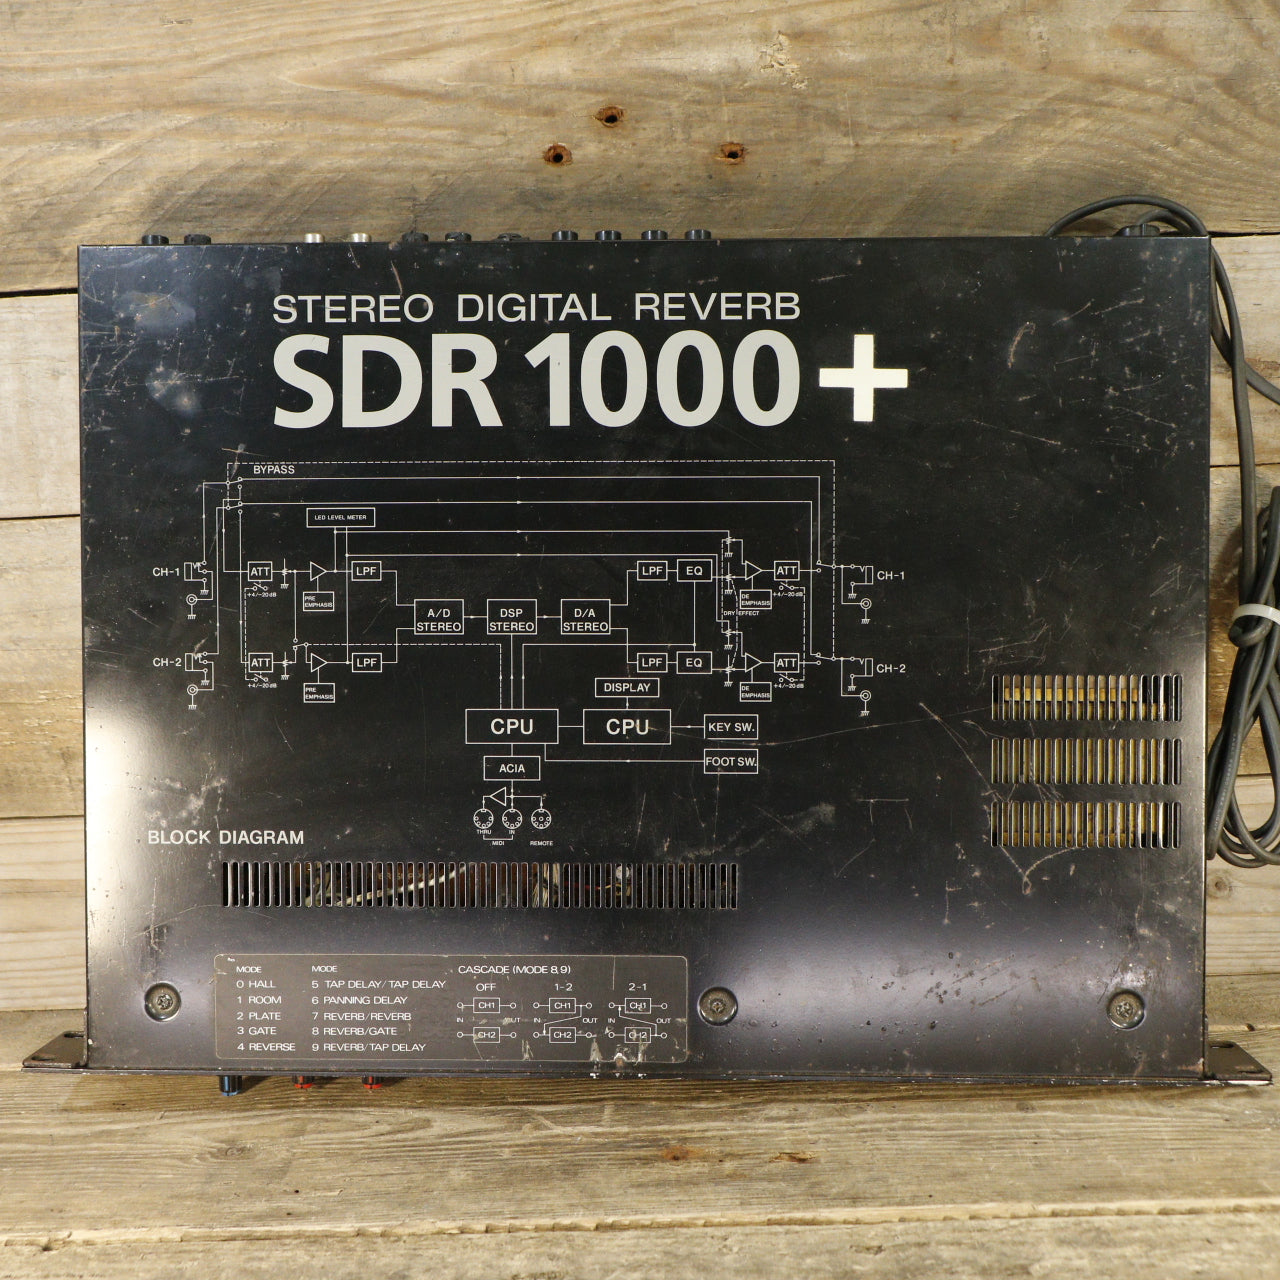 Ibanez SDR 1000+ Stereo Digital Reverb (s/n 60704516, Made in Japan)